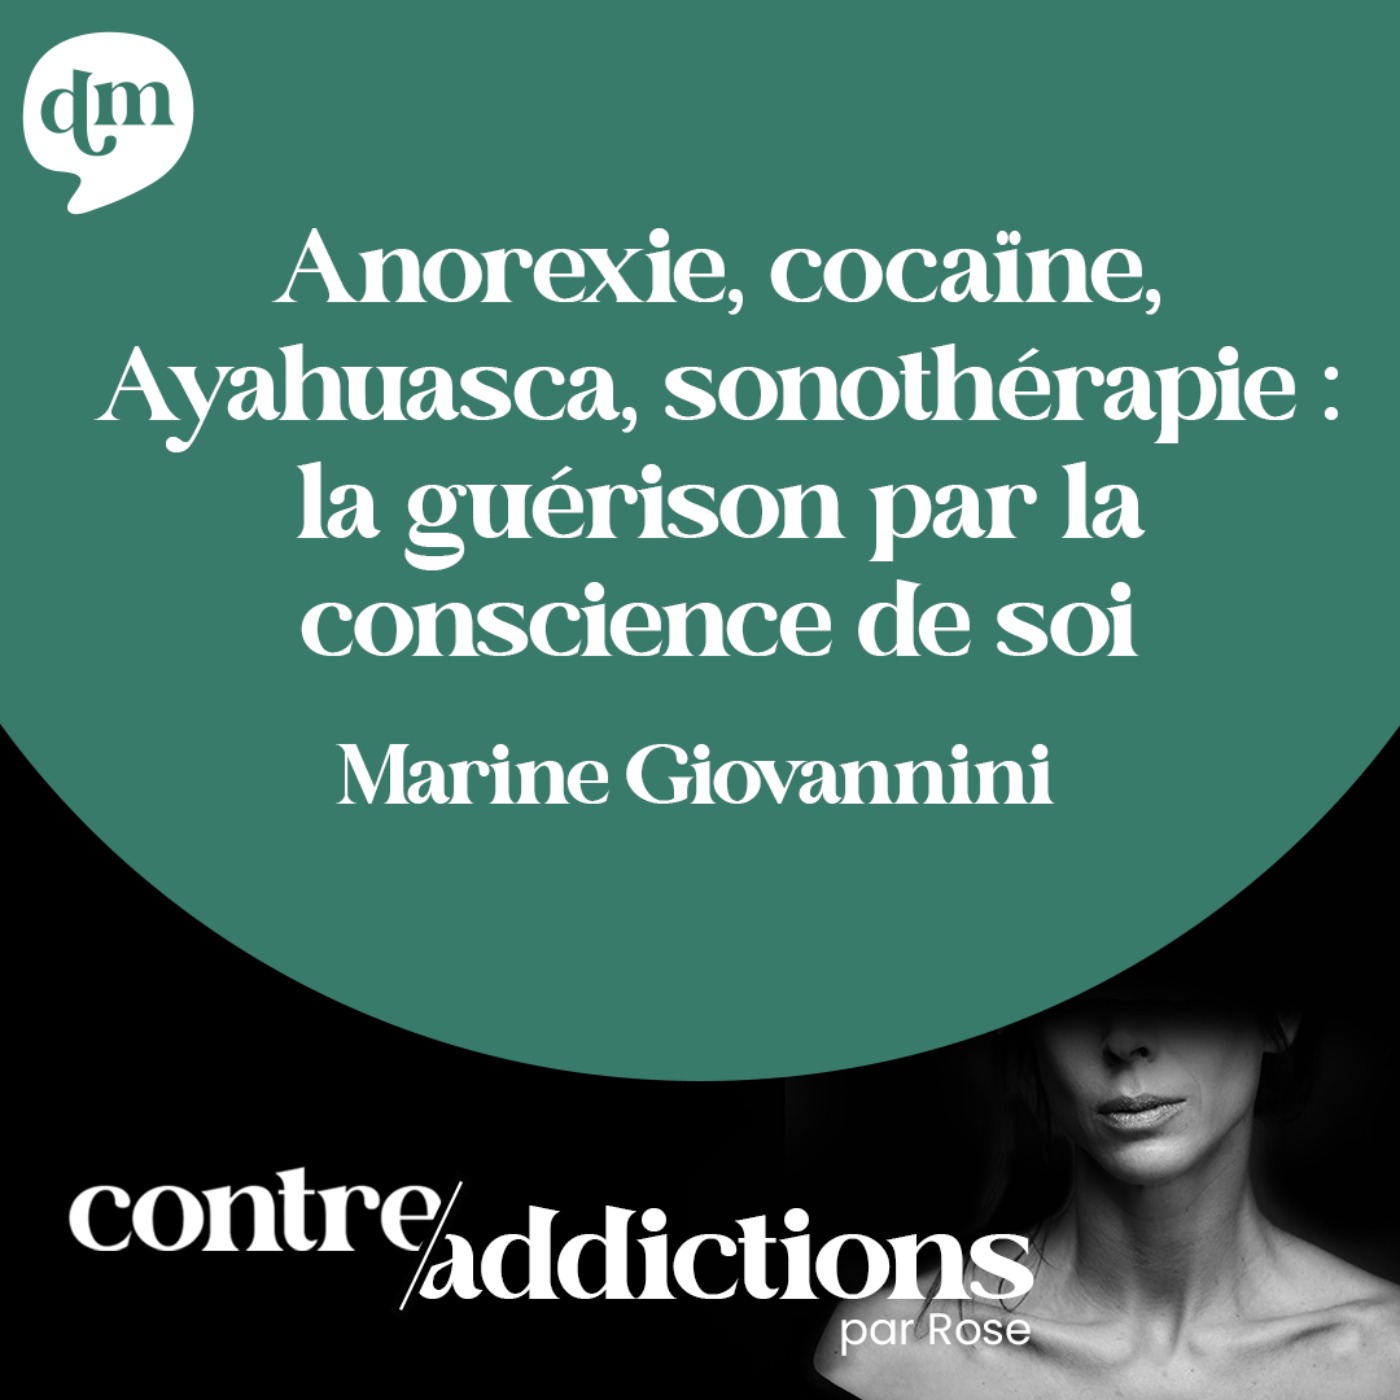 S2E7 - Anorexie, cocaïne, Ayahuasca, sonothérapie : la guérison par la conscience de soi - Marine Giovannini